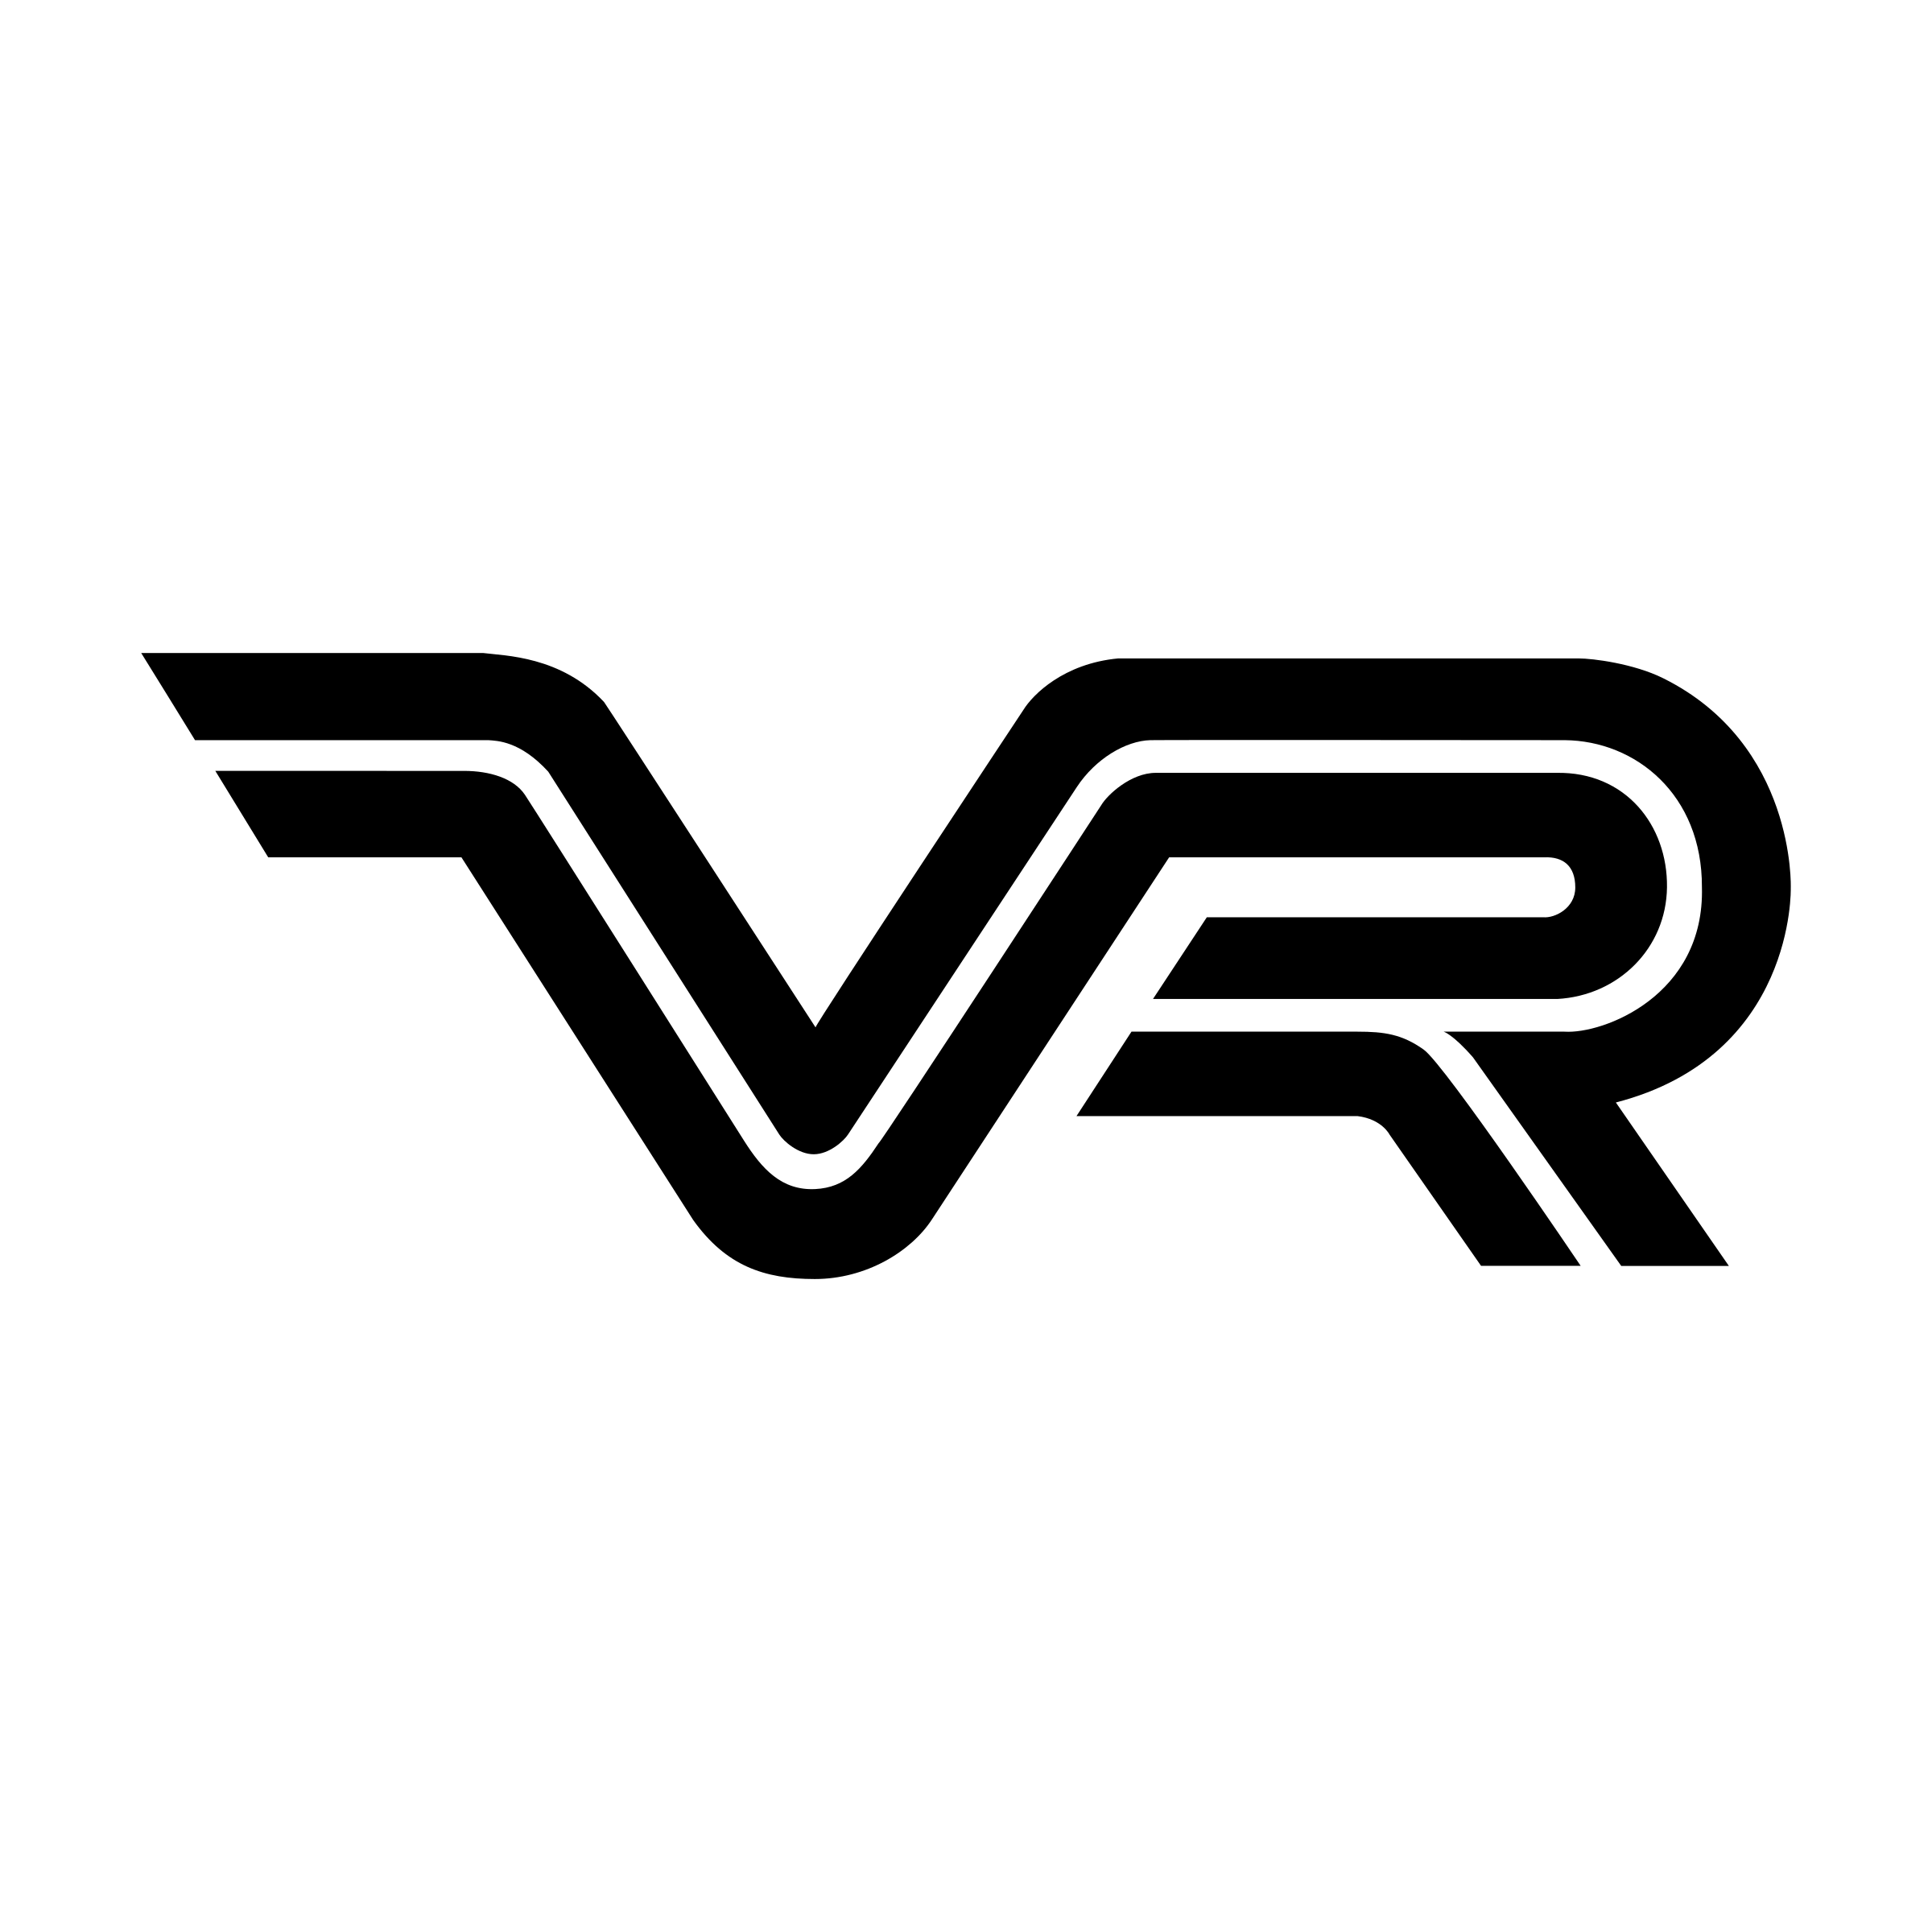 VR Logo PNG Transparent & SVG Vector.